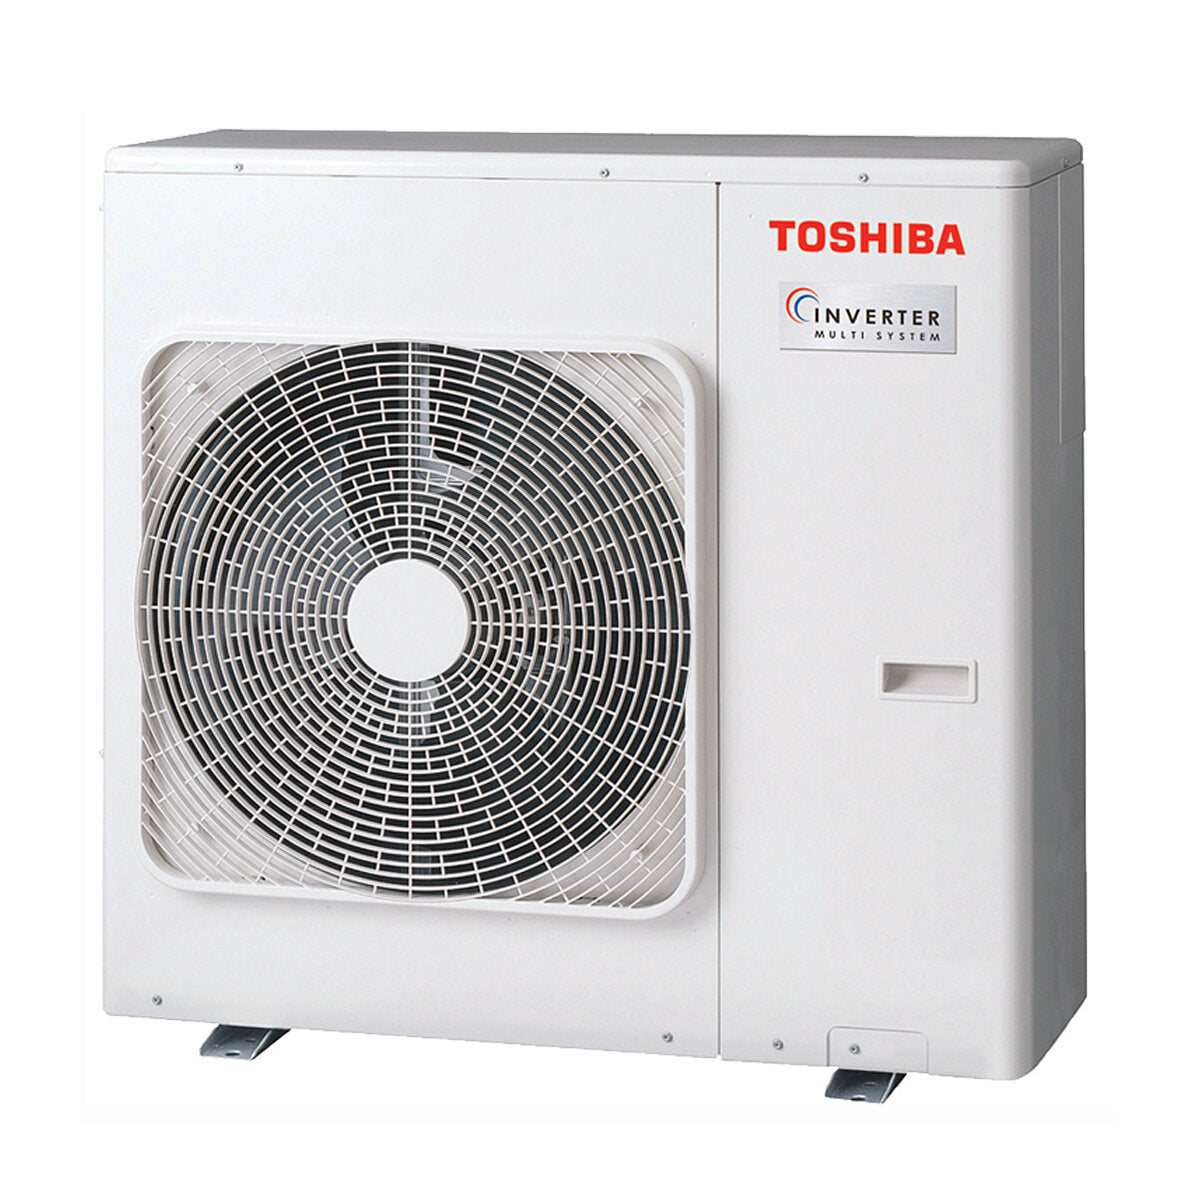 Toshiba Ductable Air Conditioner U2 Penta Split 9000 + 9000 + 12000 + 12000 + 12000 BTU Inverter A++ Außengerät 10,0 kW